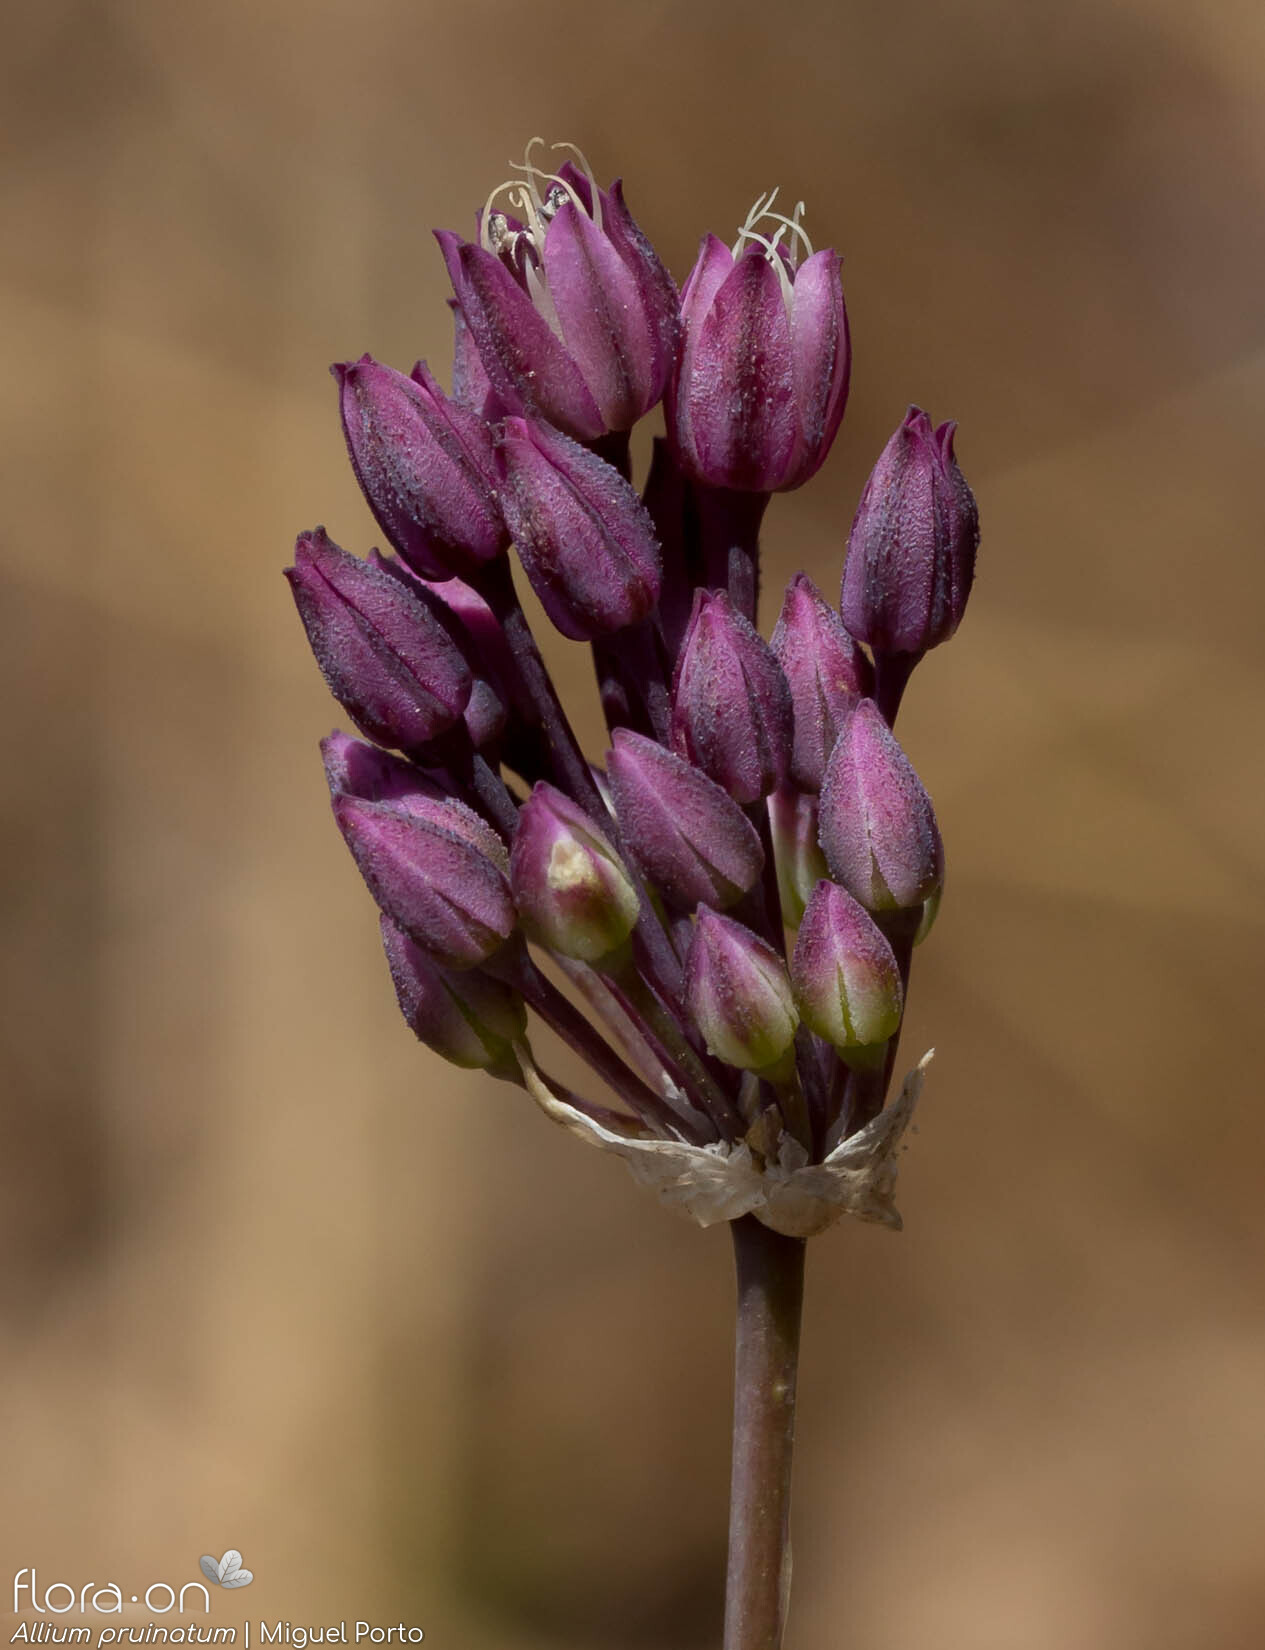 Allium pruinatum - Flor (geral) | Miguel Porto; CC BY-NC 4.0